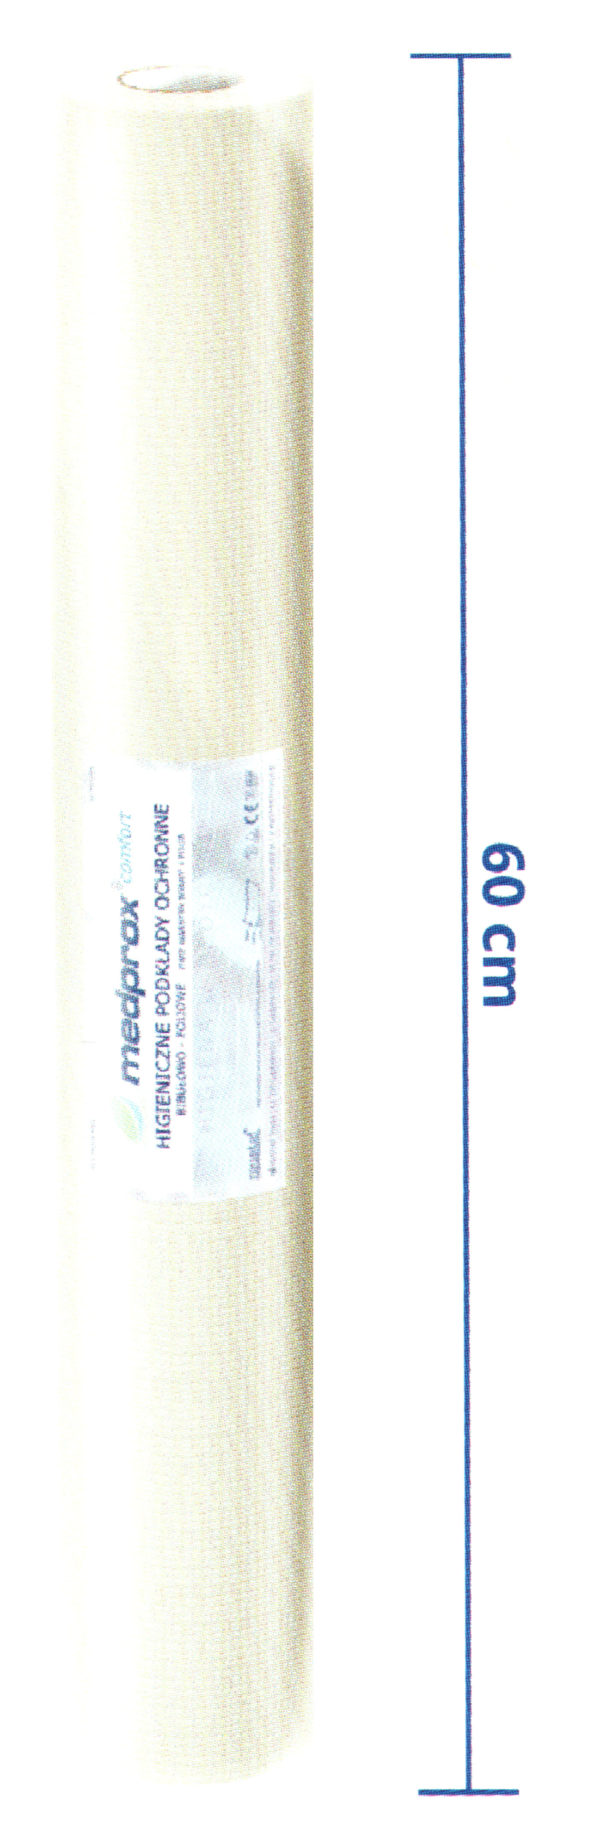 Podkład bibułowo-foliowy MEDPROX Comfort 60cm x 40m_BIAŁY